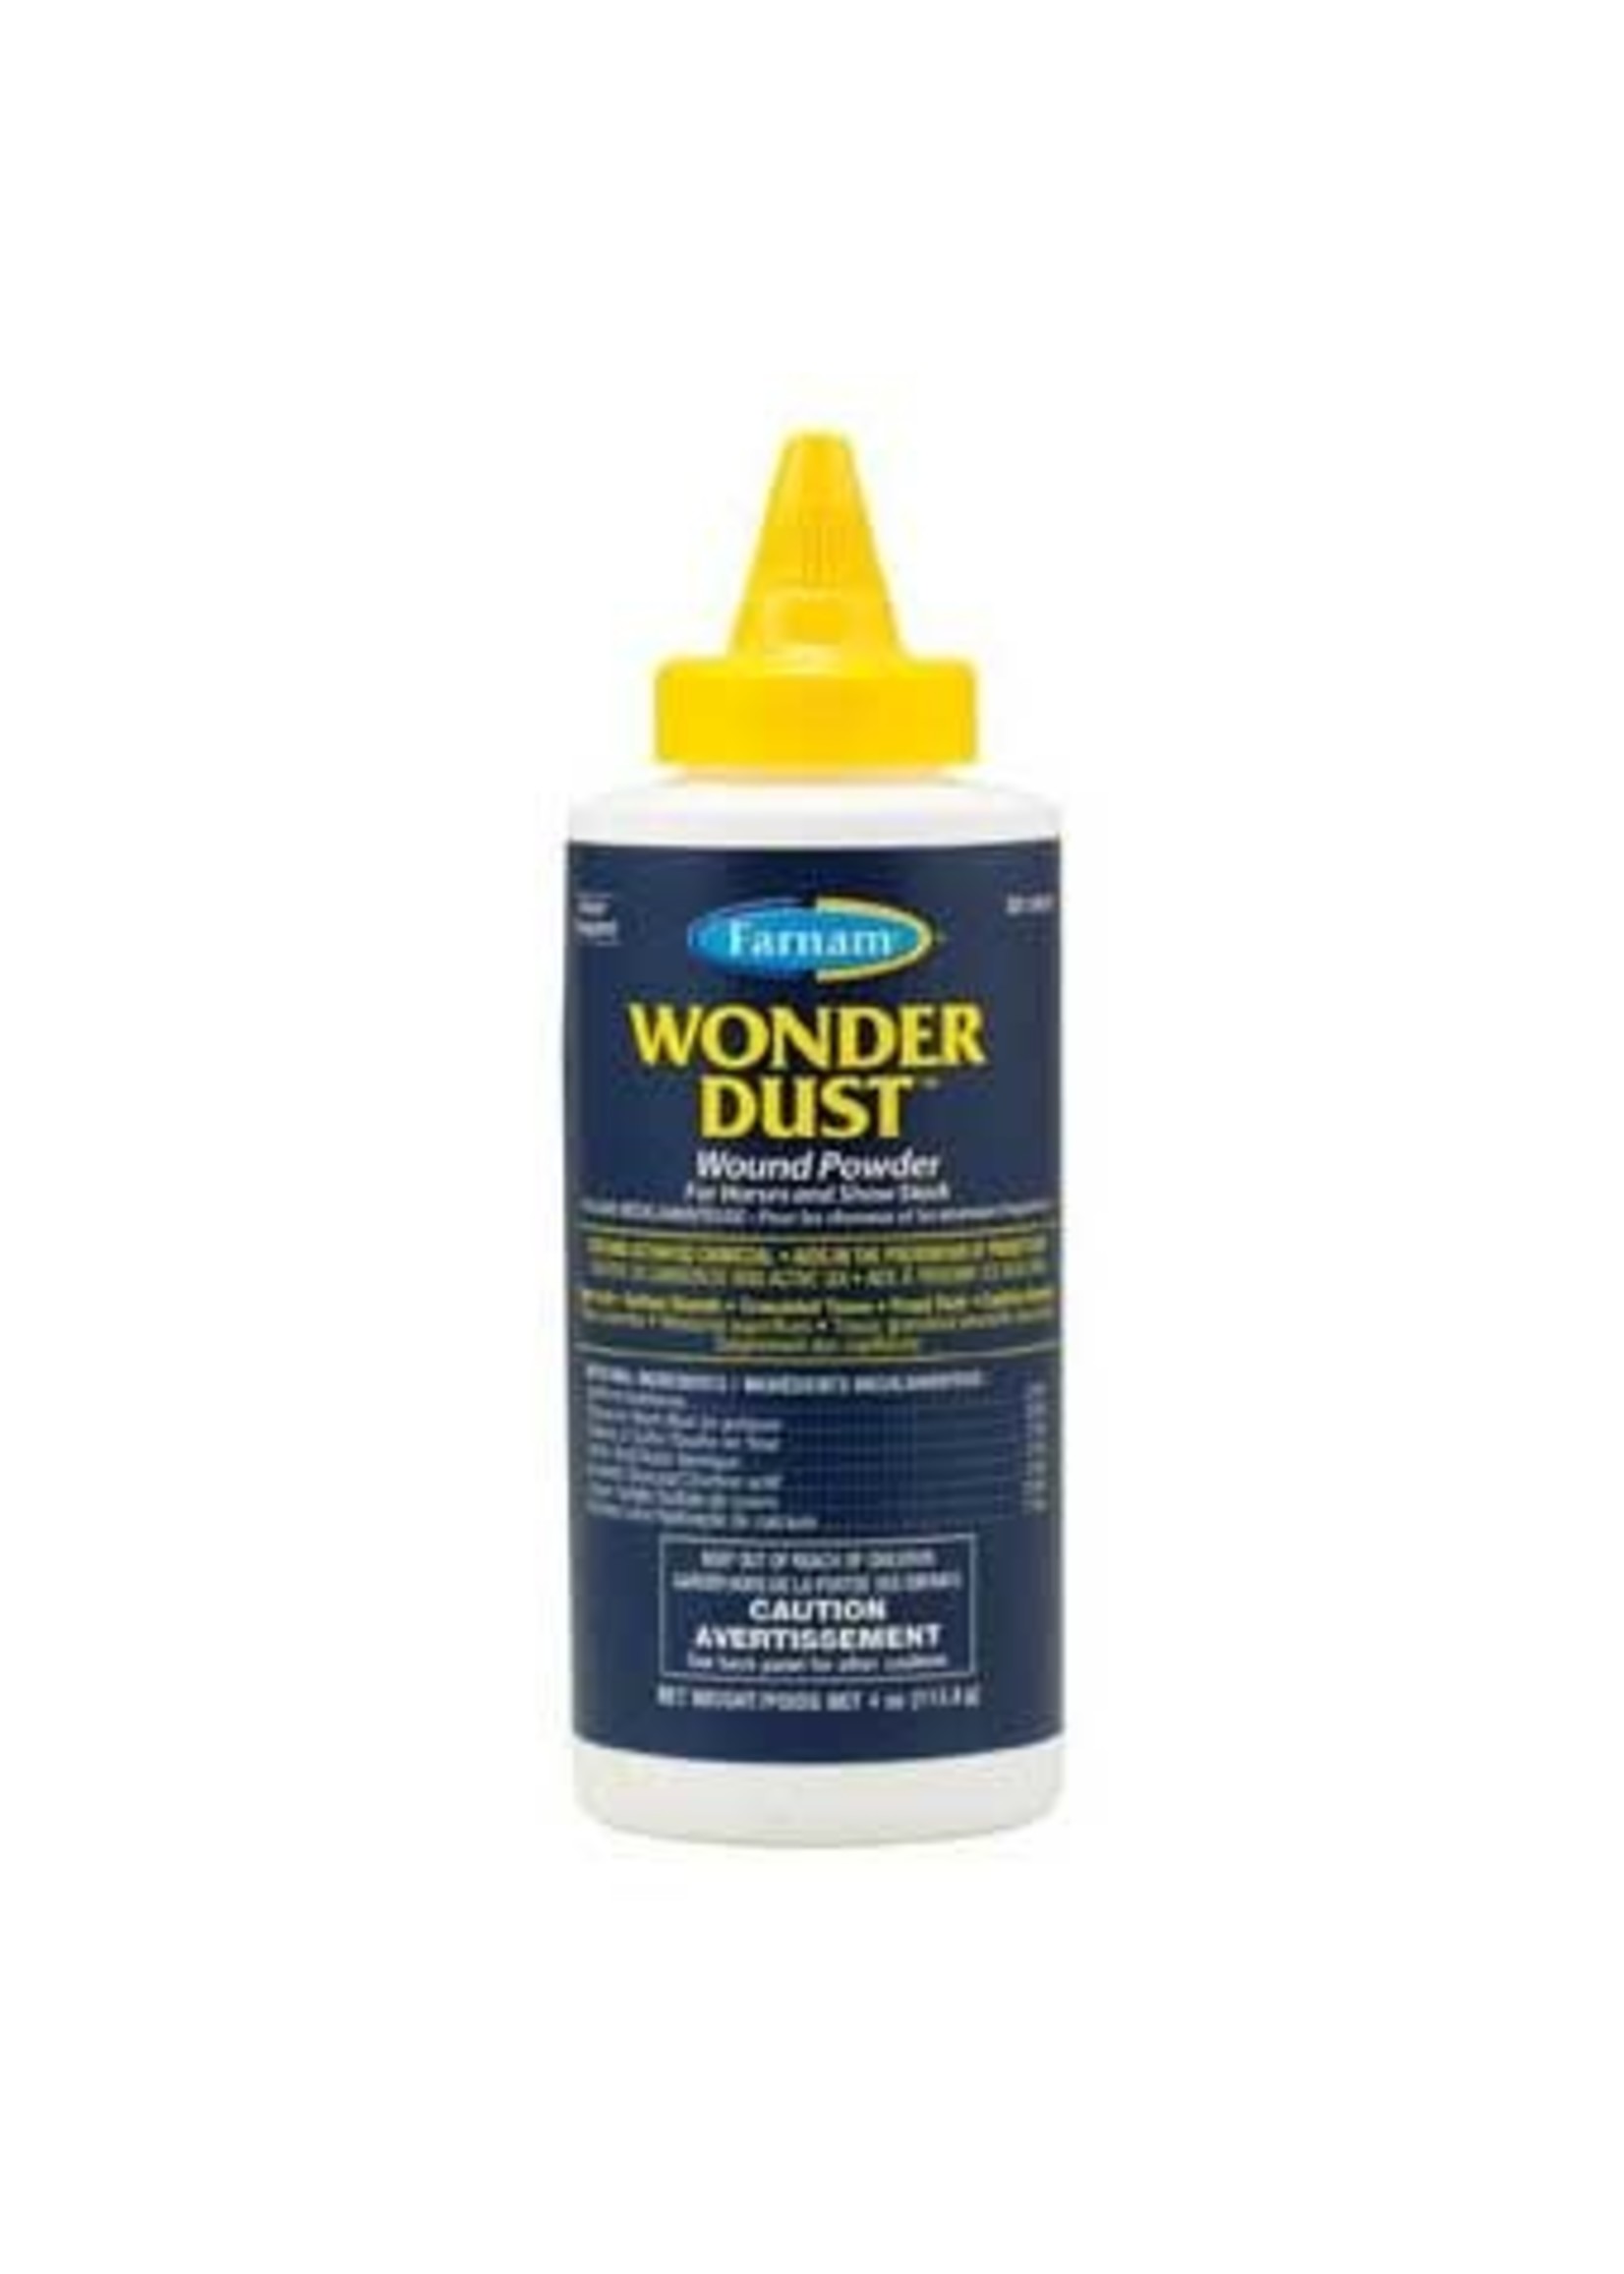 Farnam Wonder Dust Powder, 4 oz.